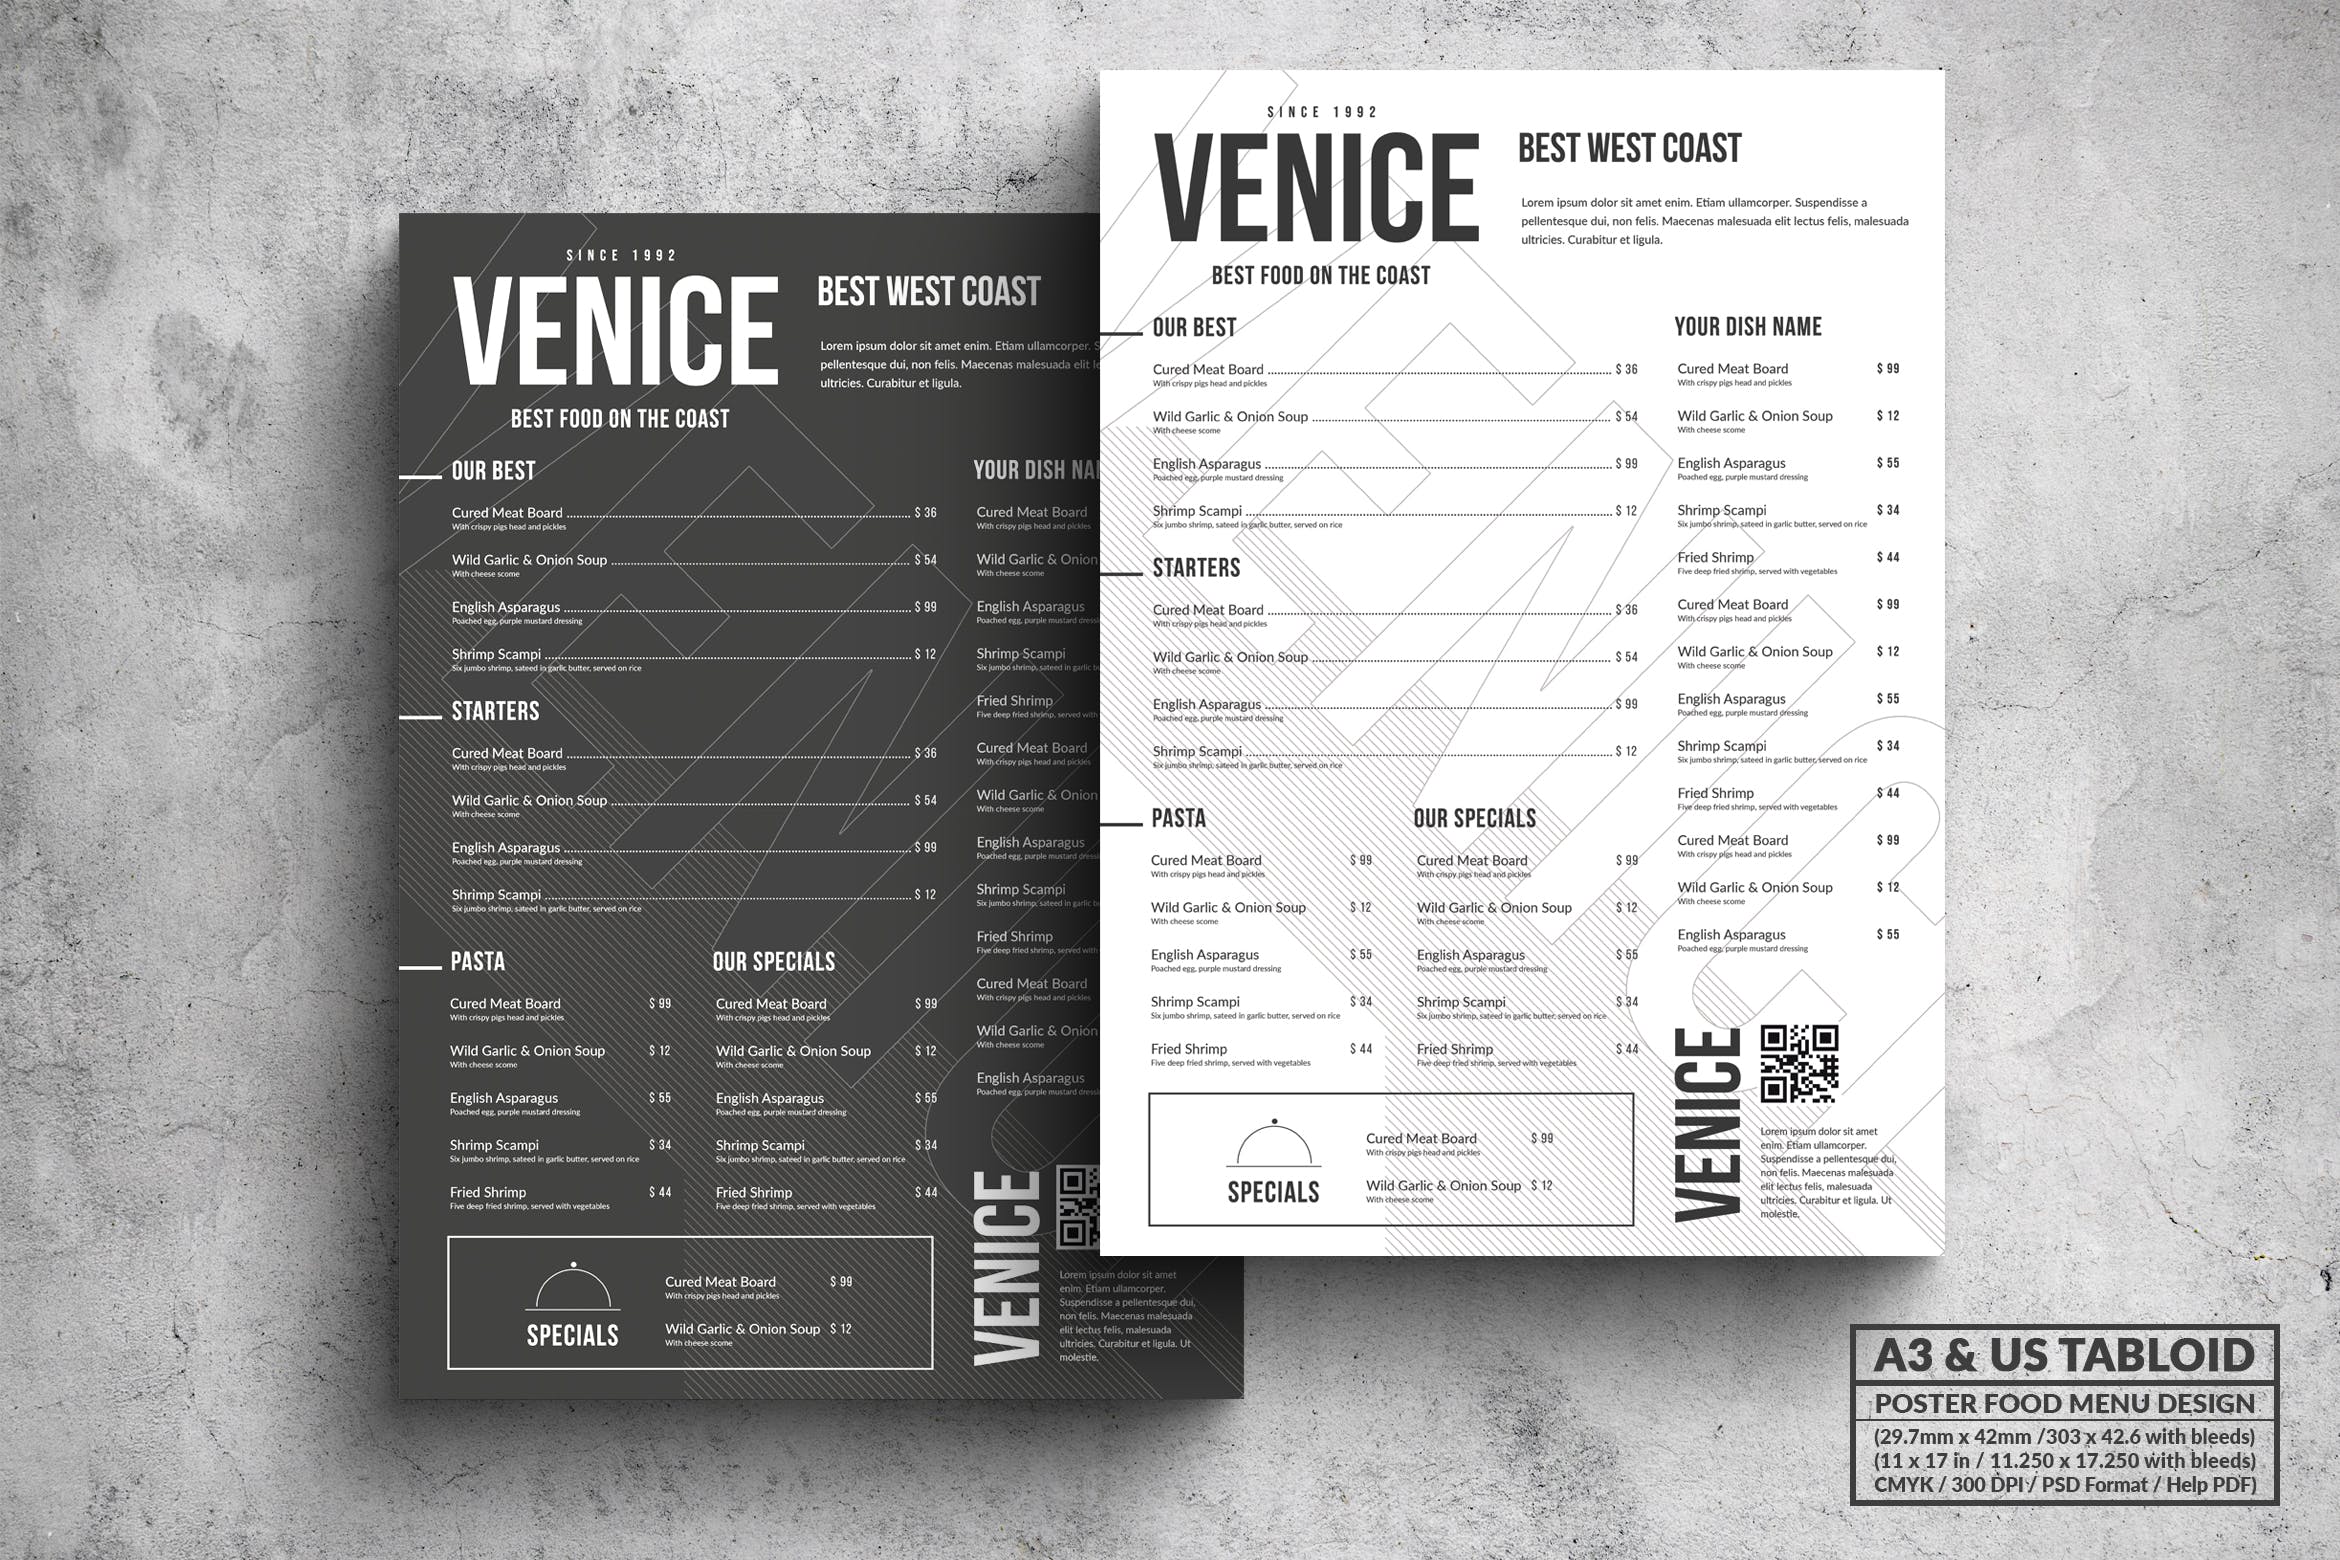 极简设计风格西餐菜单海报PSD素材蚂蚁素材精选模板 Venice Minimal Food Menu – A3 & US Tabloid Poster插图